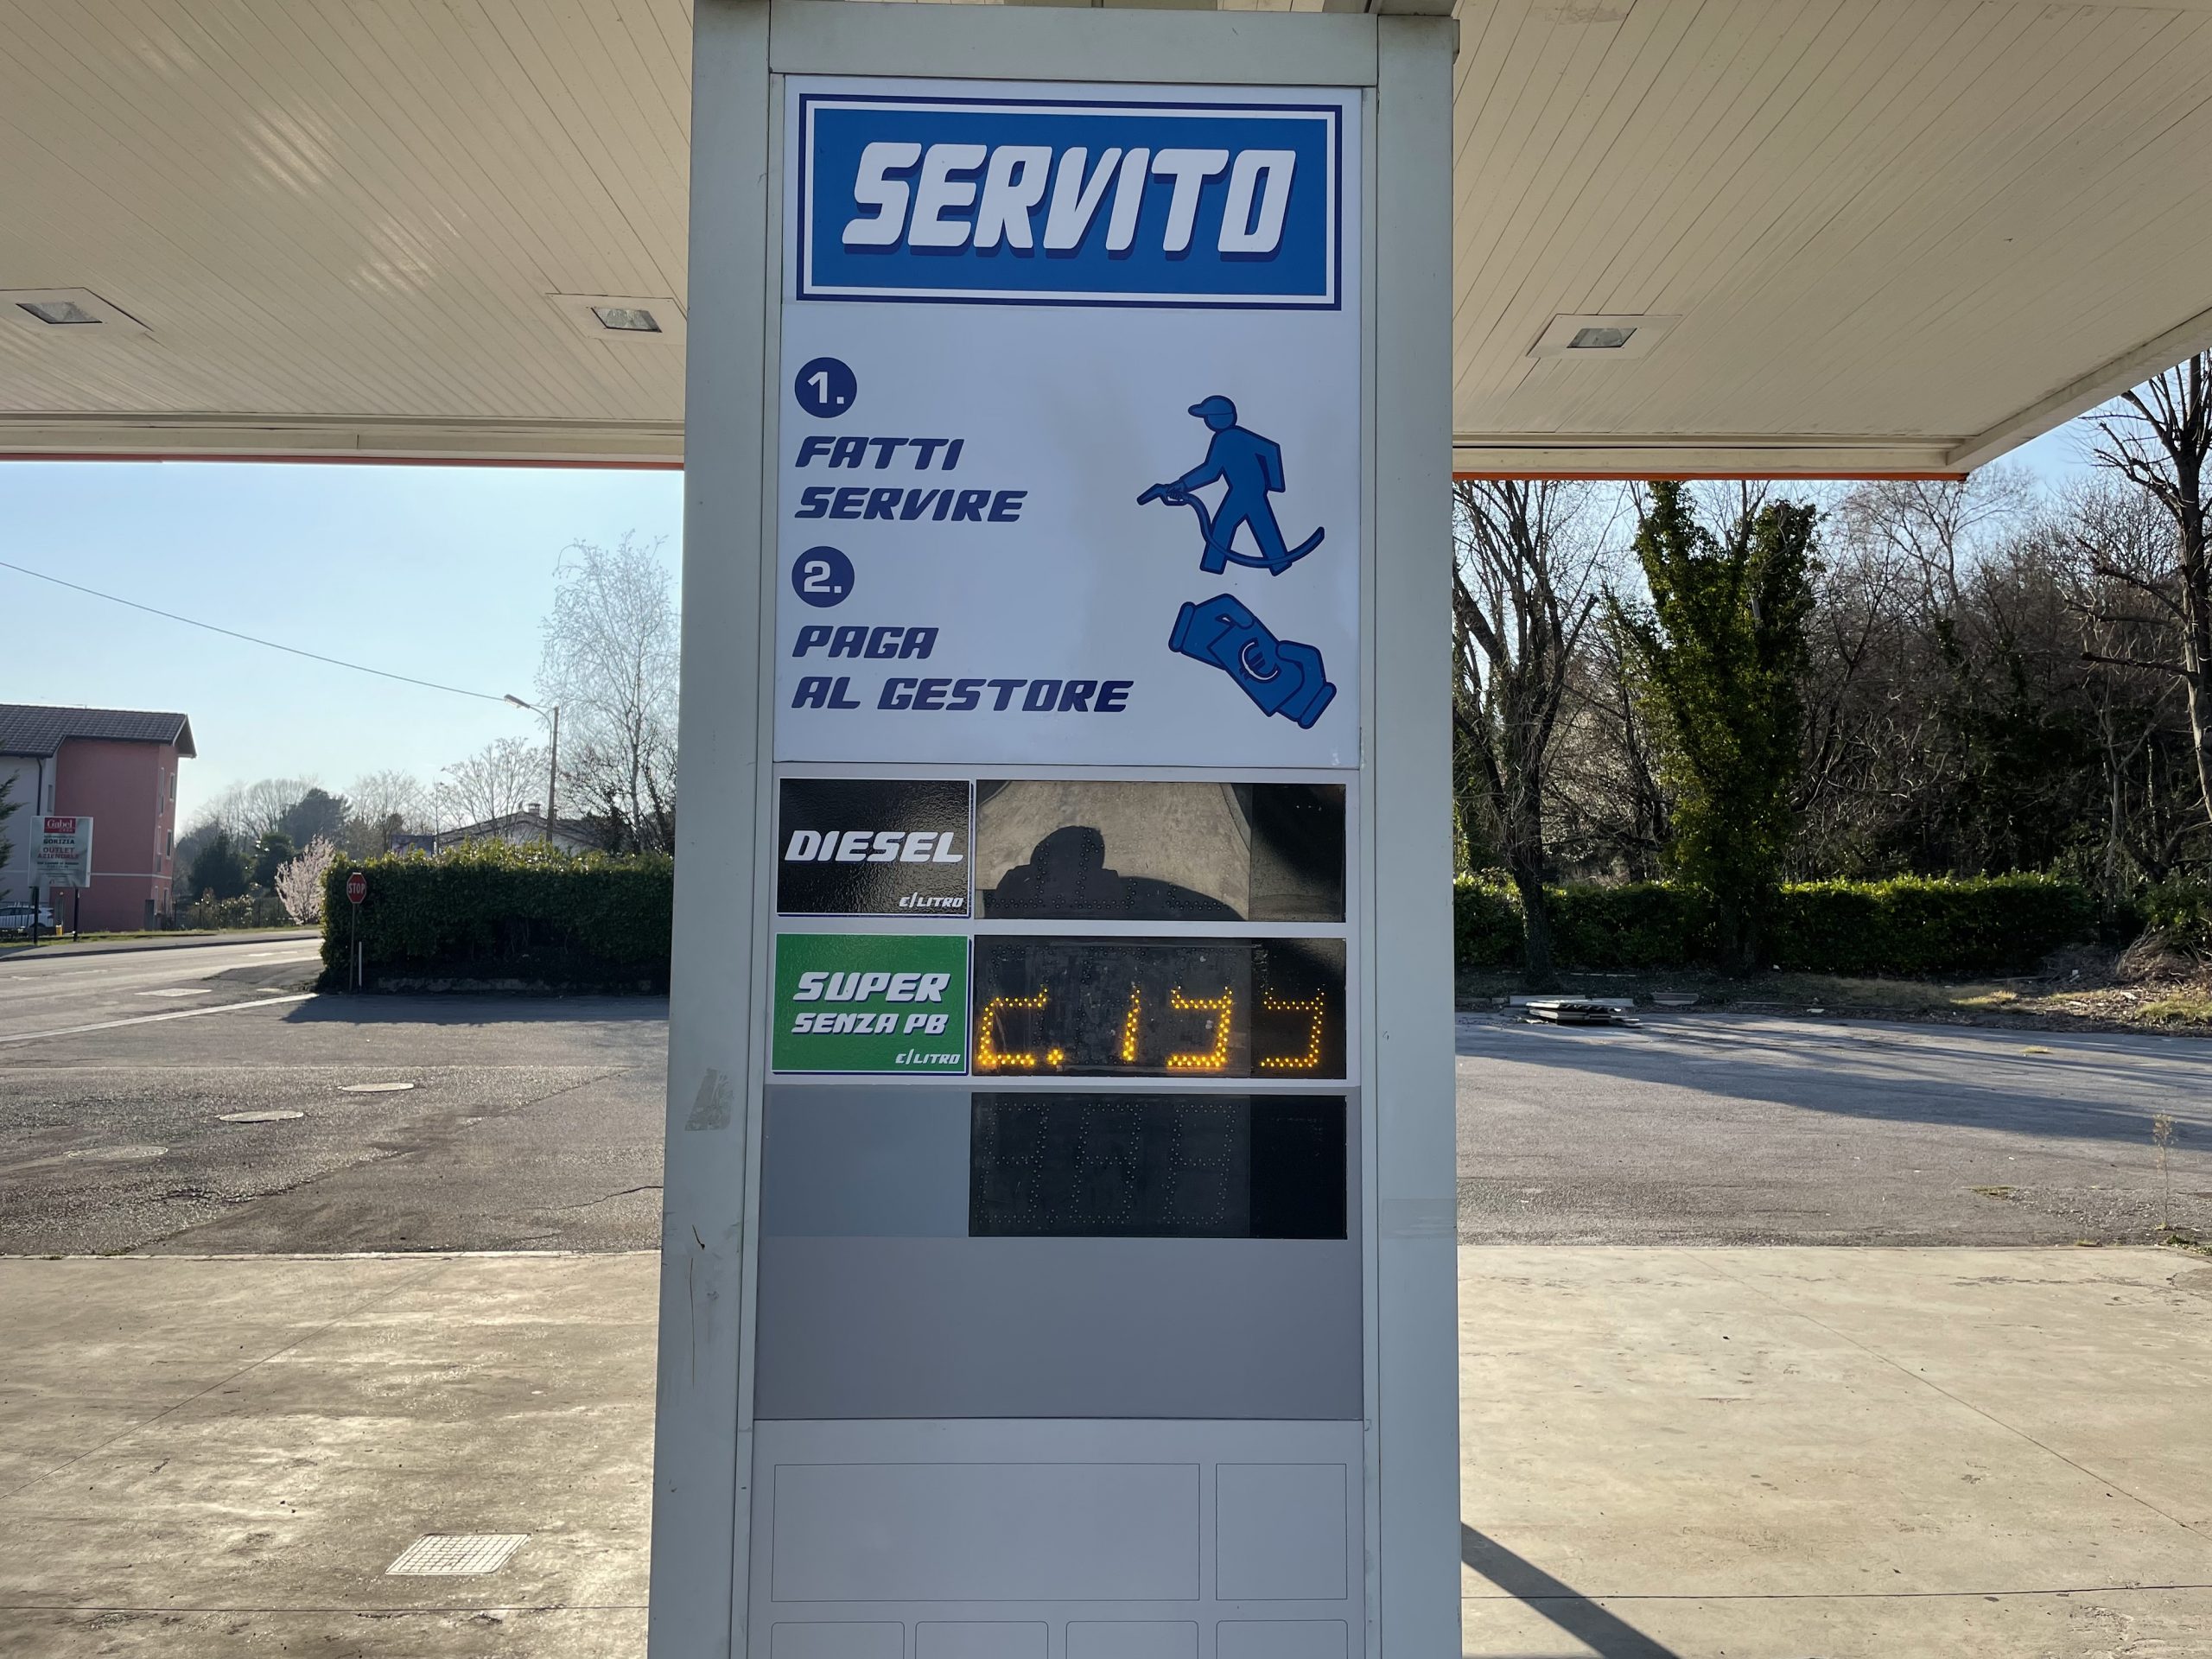 bencinska črpalka, Italija